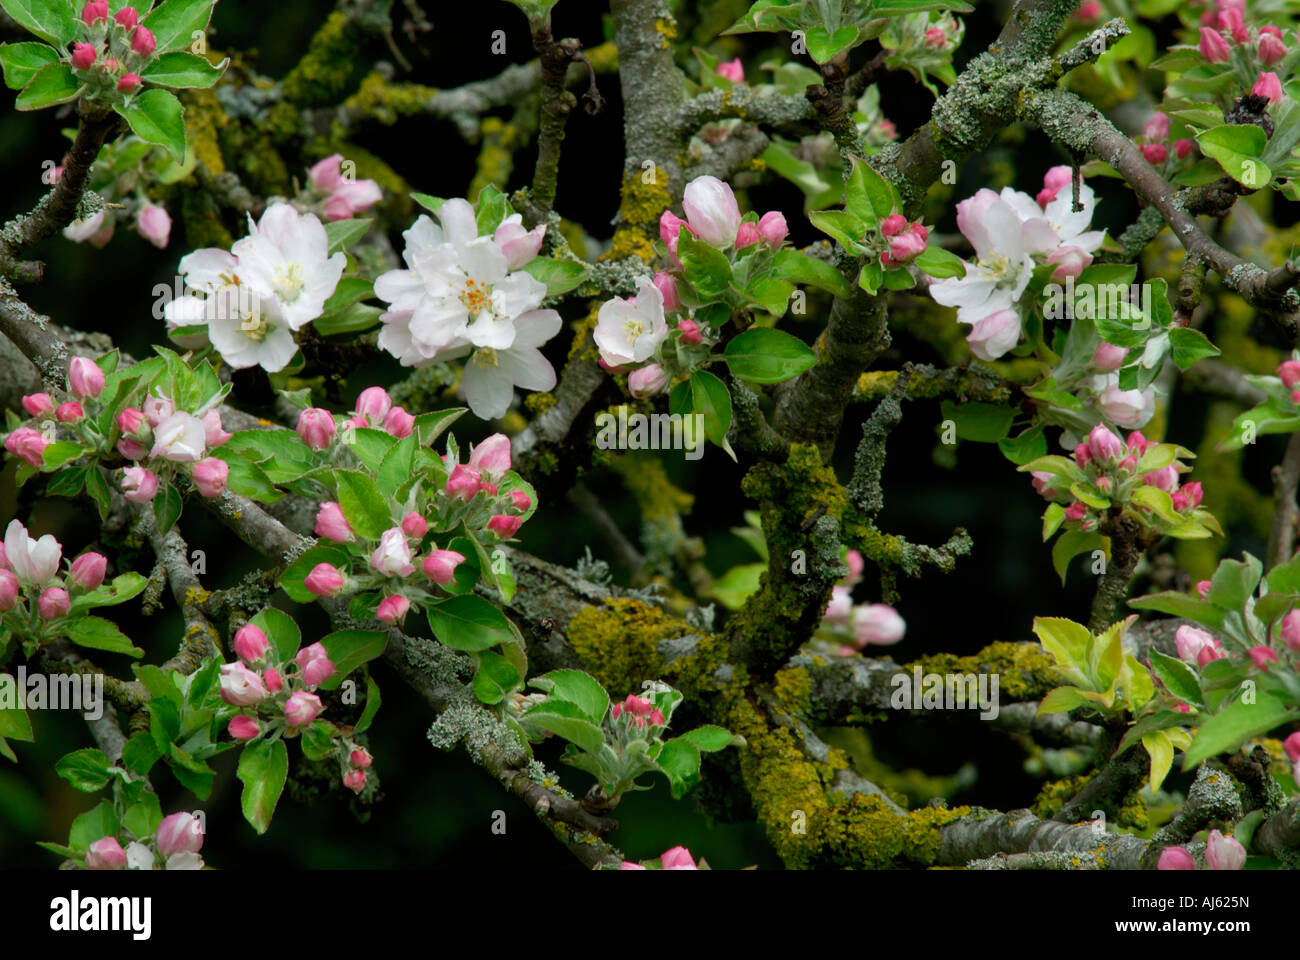 Malus domestica - Apple tree blossom. Stock Photo